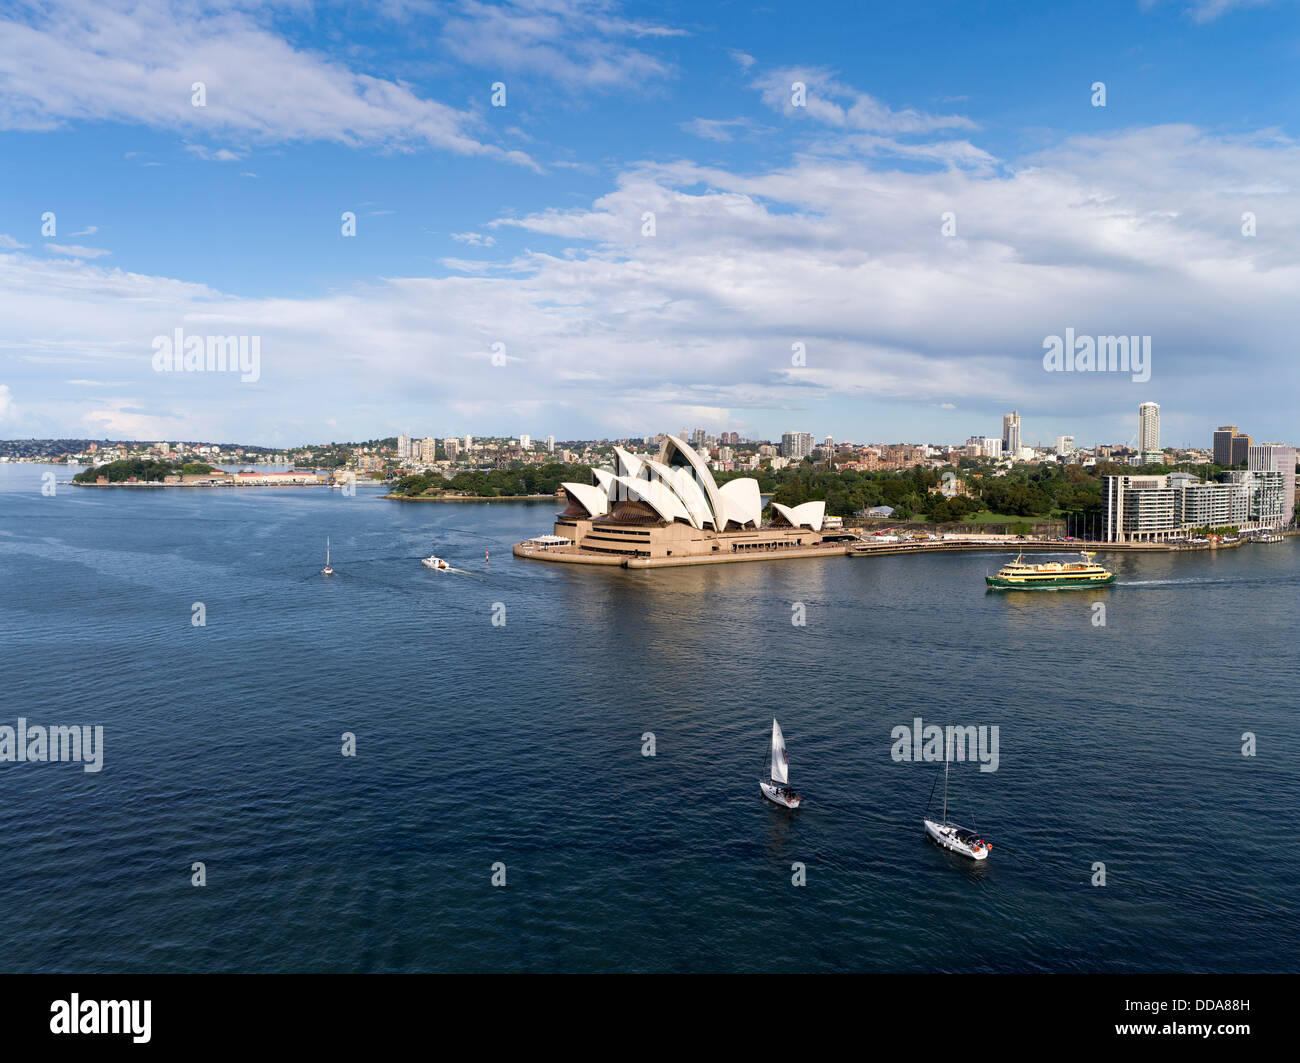 dh Sydney Harbour SYDNEY AUSTRALIE Bateaux à voile Sydney Opera House Harbour bateau aérien Banque D'Images